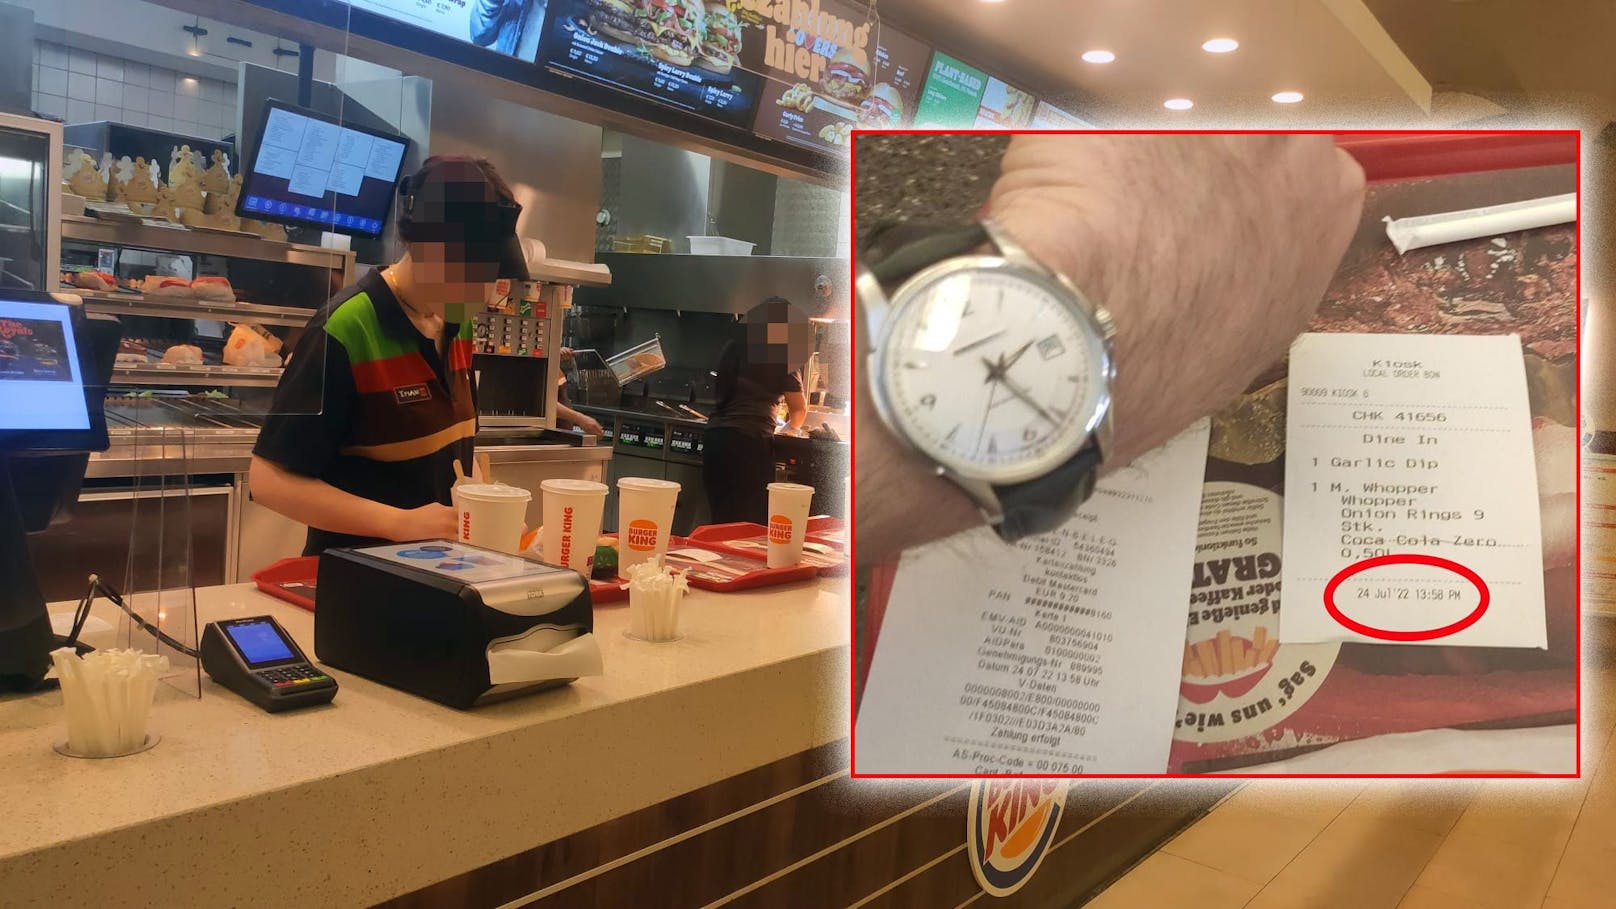 Kein Personal – Wiener wartet 1/2 Stunde auf "Fastfood"